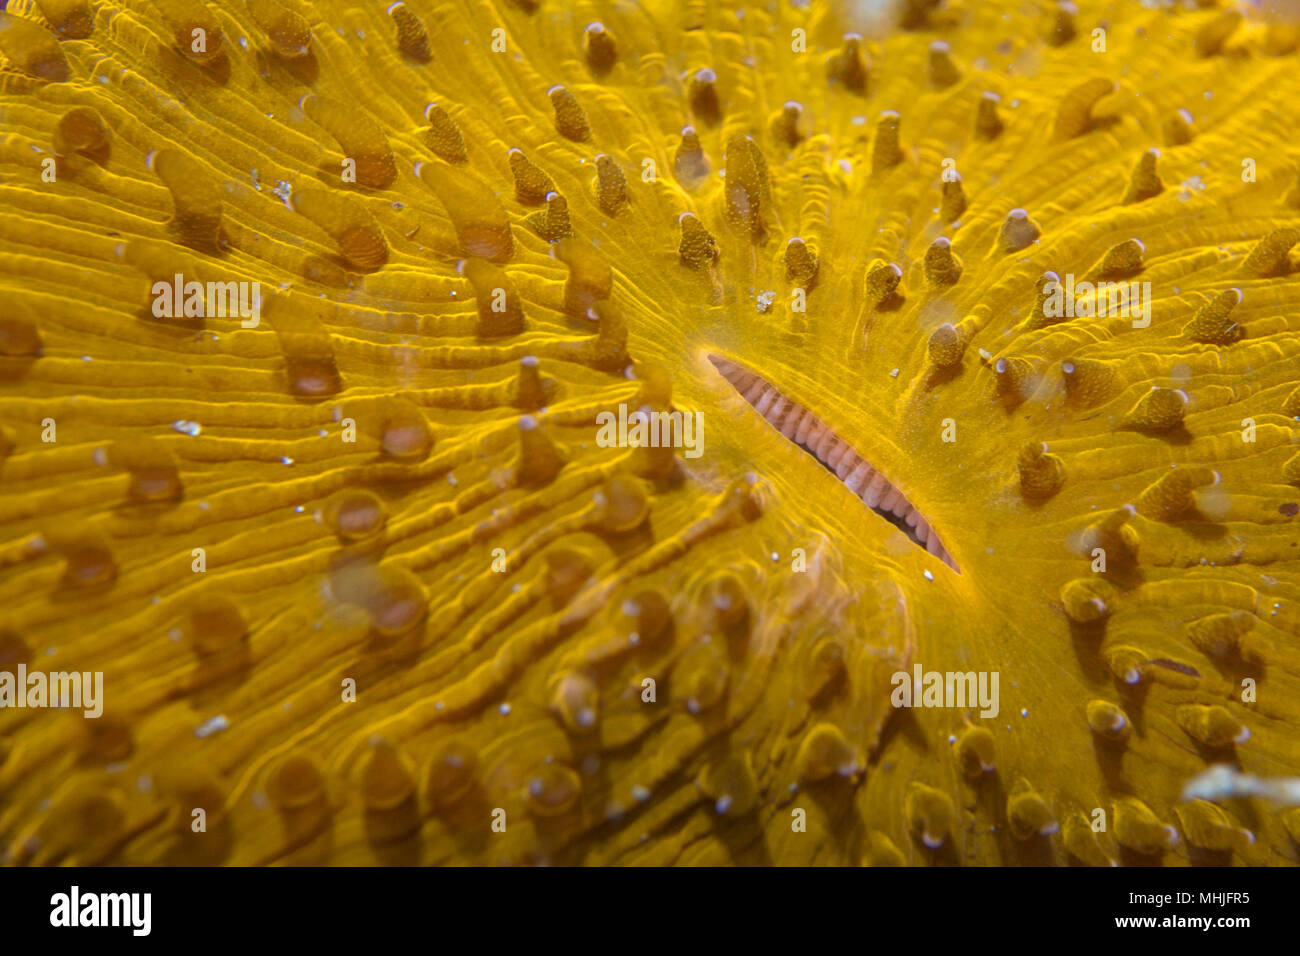 Un corail dur jaune ressemble à une bouche ouverte à Sipadan, Bornéo, Malaisie Banque D'Images